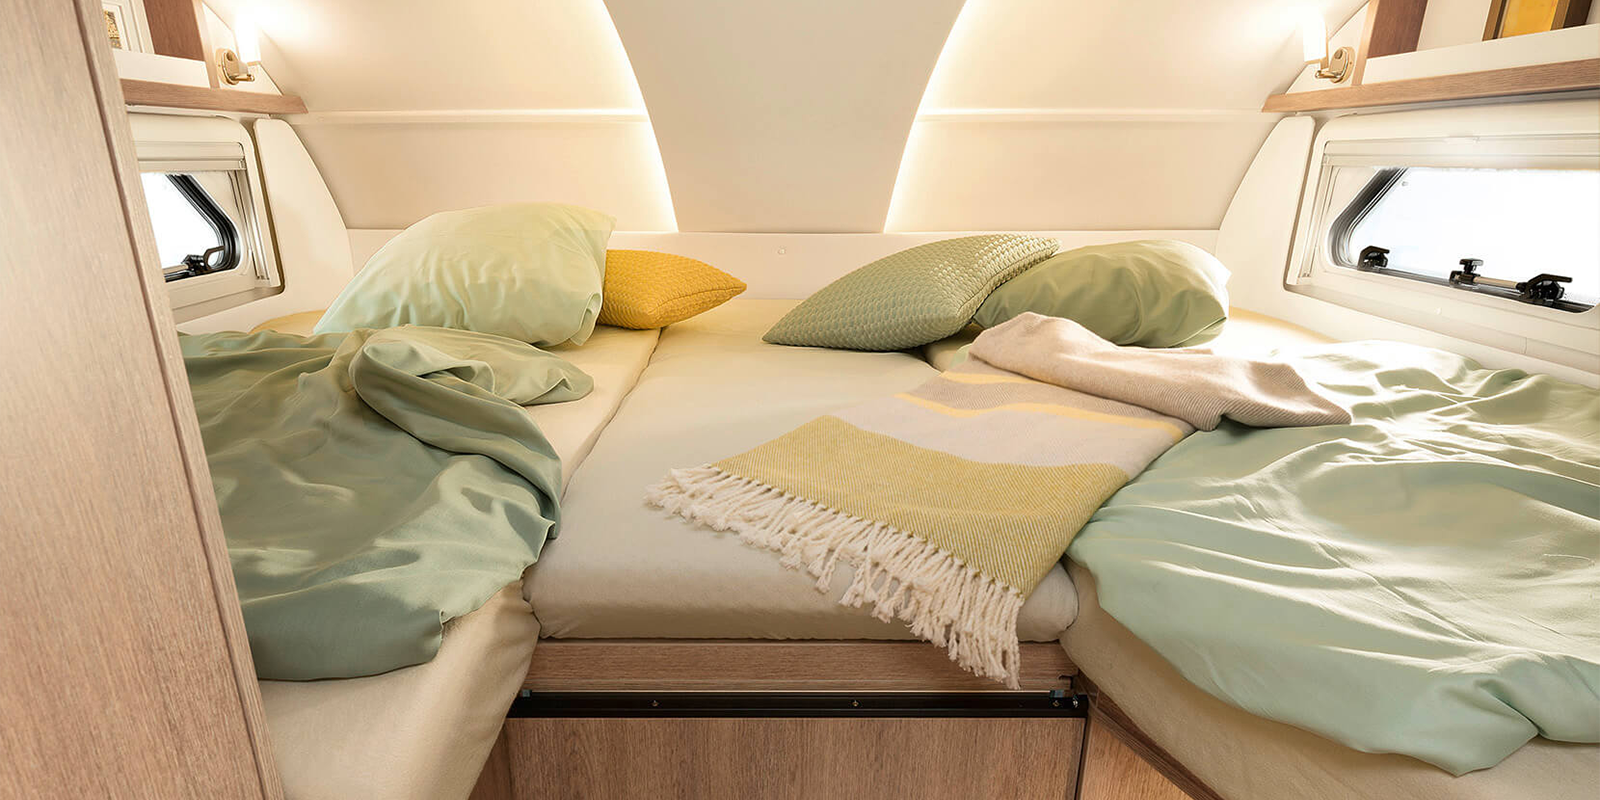 O acesso ao quarto no cappuccino, bem como a cama de baloiço nas Integralidades, é fácil e seguro graças à escada dobrável resistente • A 7820-2 | Roble Virginia | Amaro